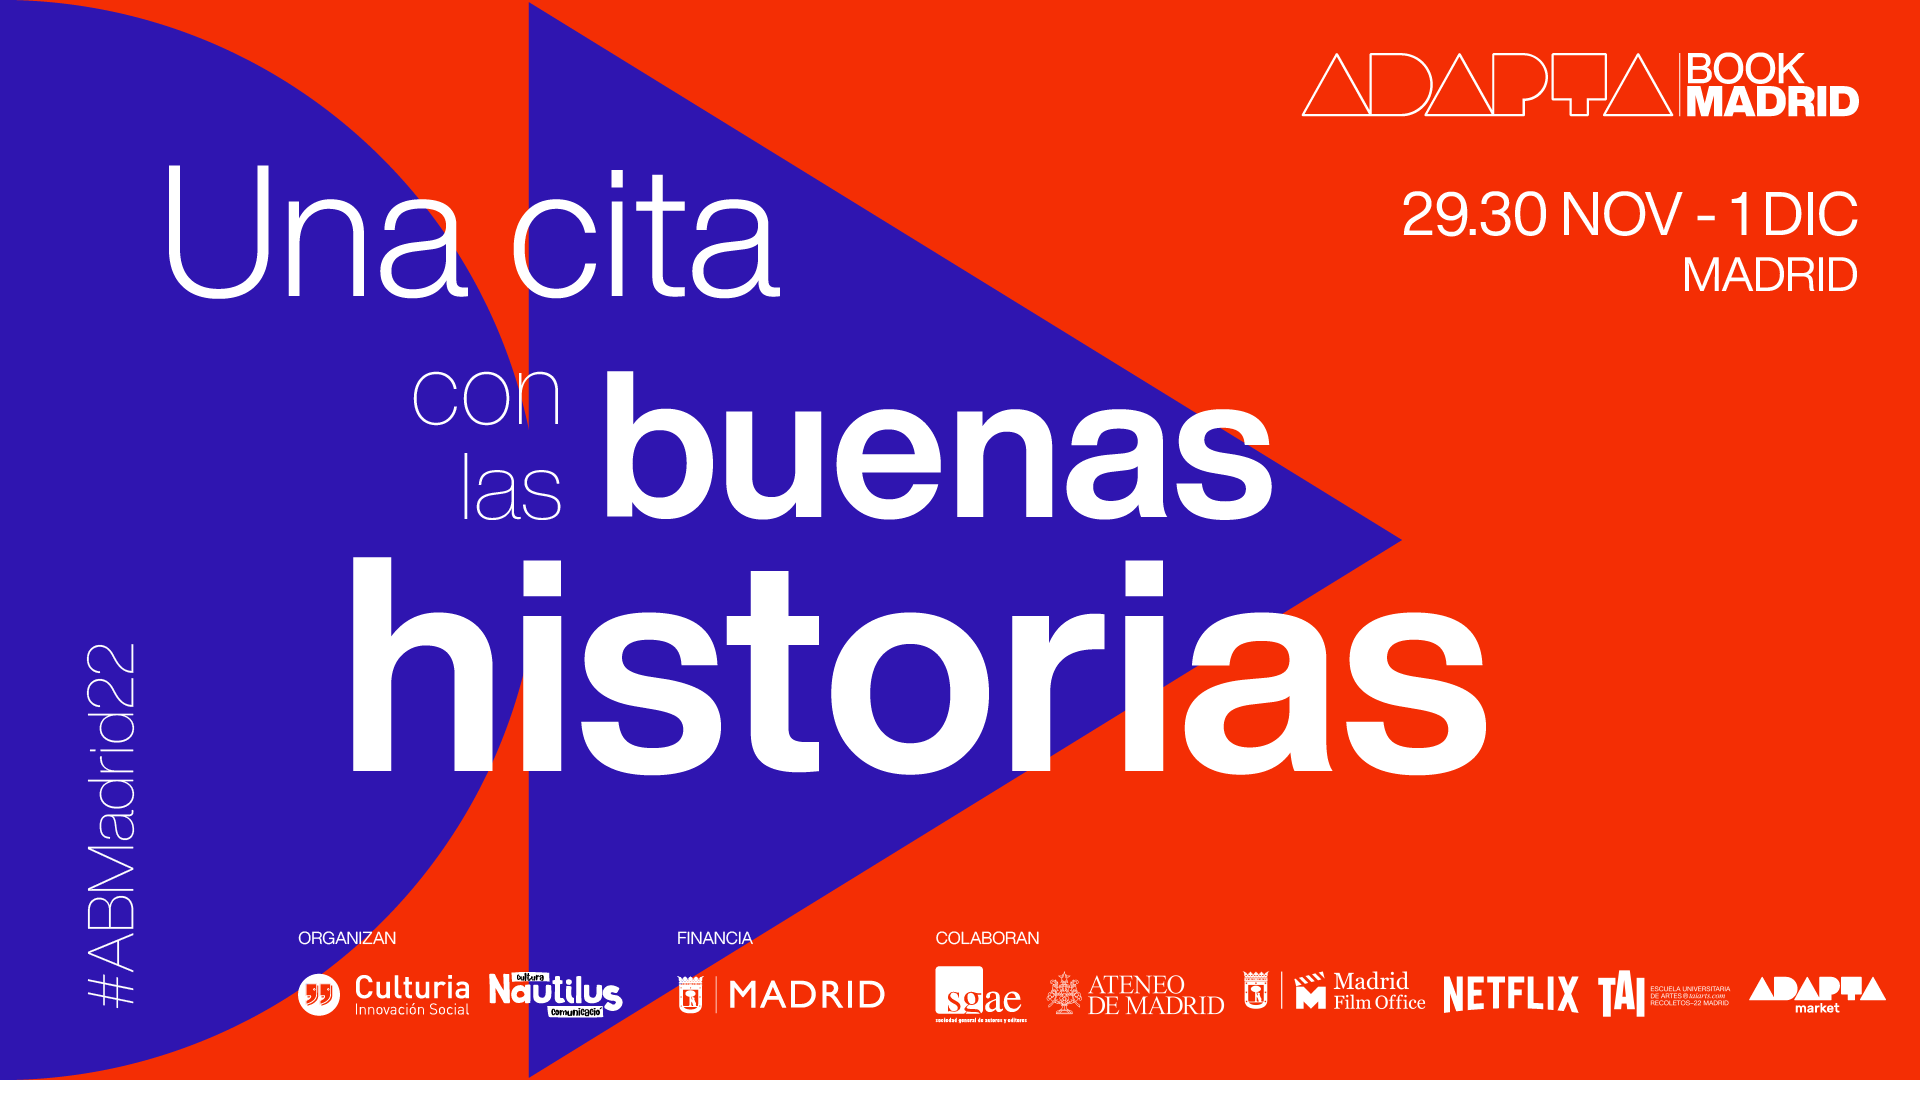 Programa de la primera edición de Adapta Book Madrid, que se celebrará los días 29 y 30 de noviembre y 1 de diciembre